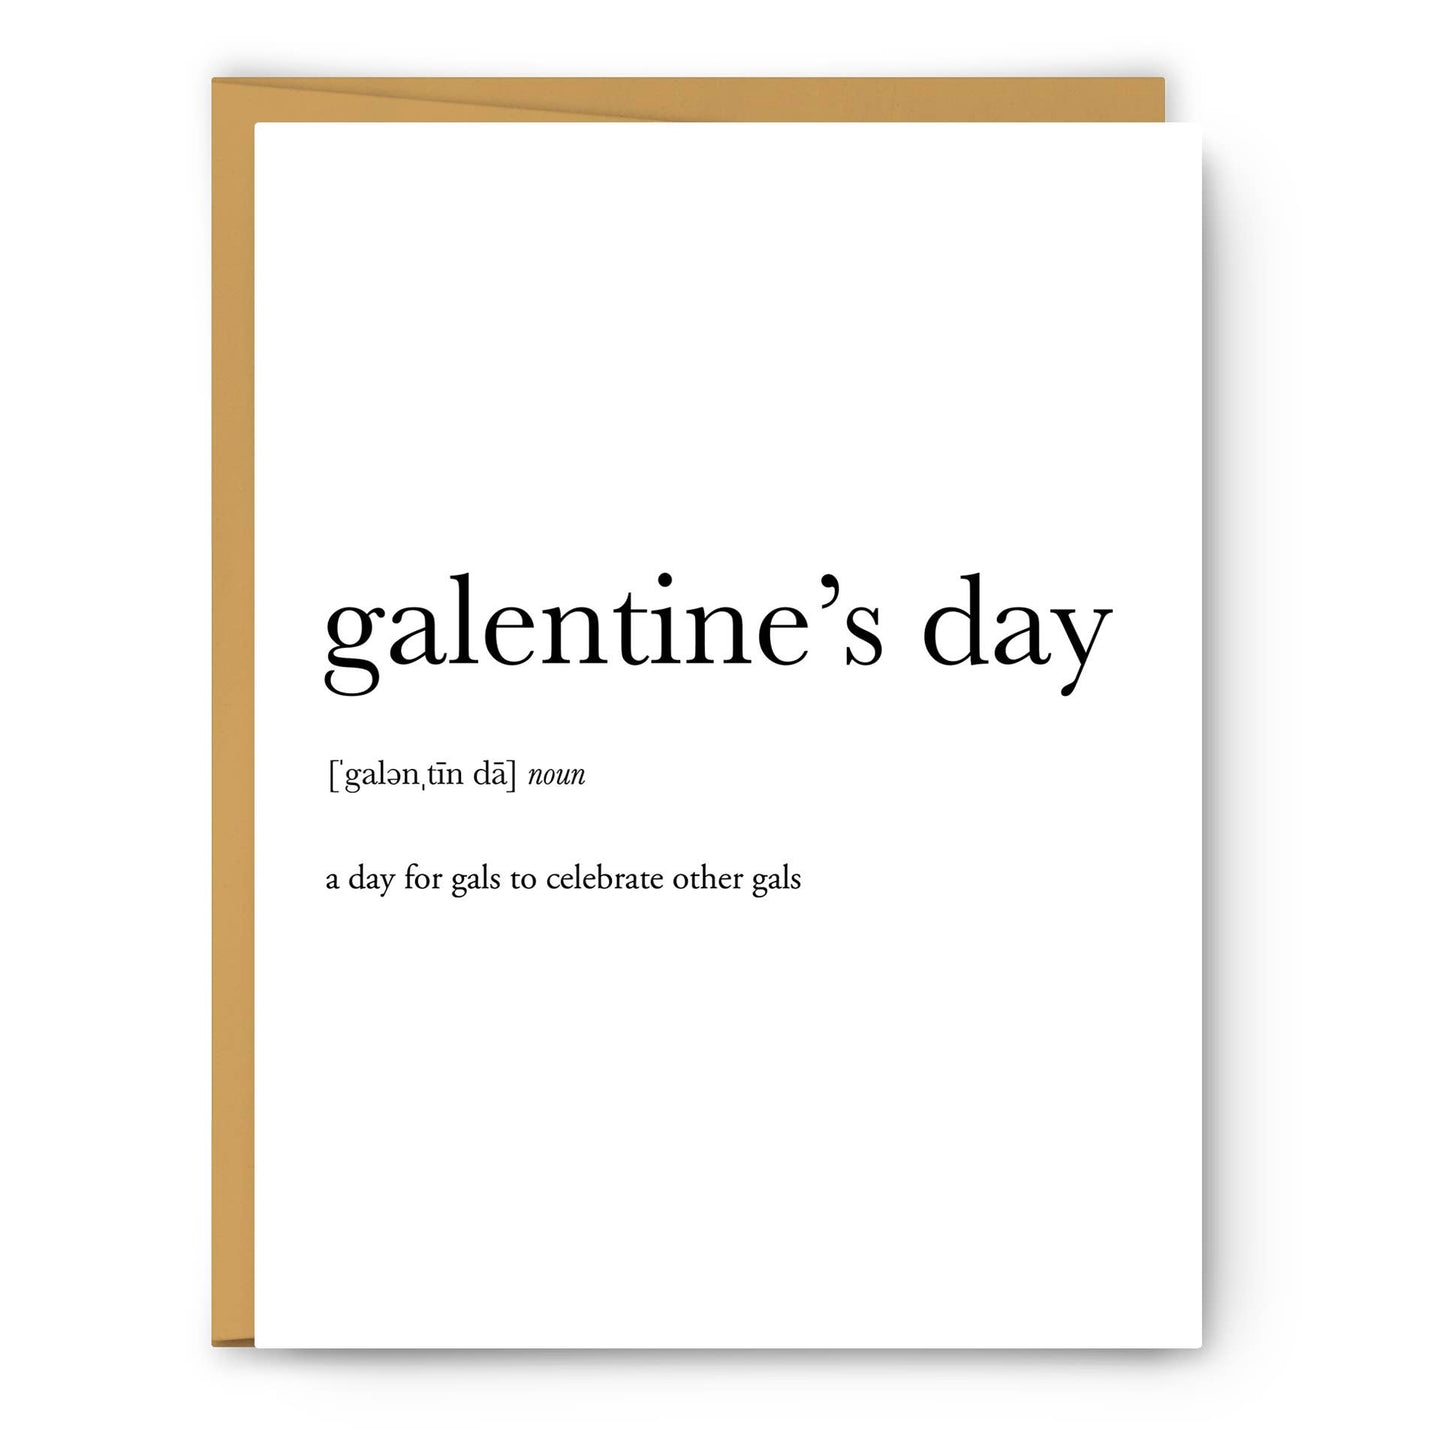 Galentine's Day Definition - Valentine's Day Card